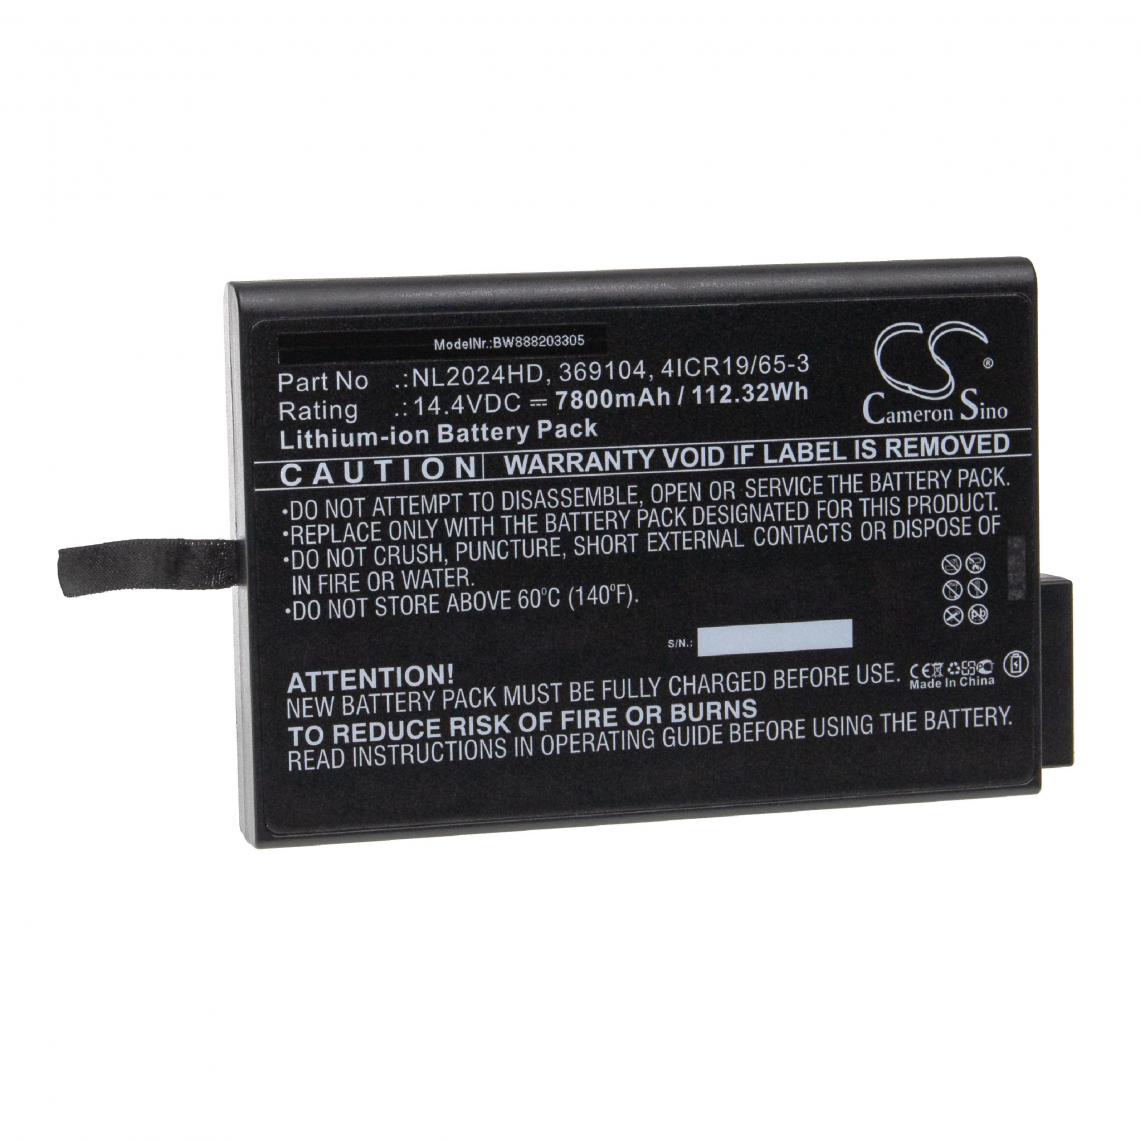 Vhbw - vhbw Batterie compatible avec Philips NL2024HD22, NL2024HU22, OE2, RES-900-102, RH2024HD34 pour appareil médical (7800mAh, 14,4V, Li-ion) - Piles spécifiques